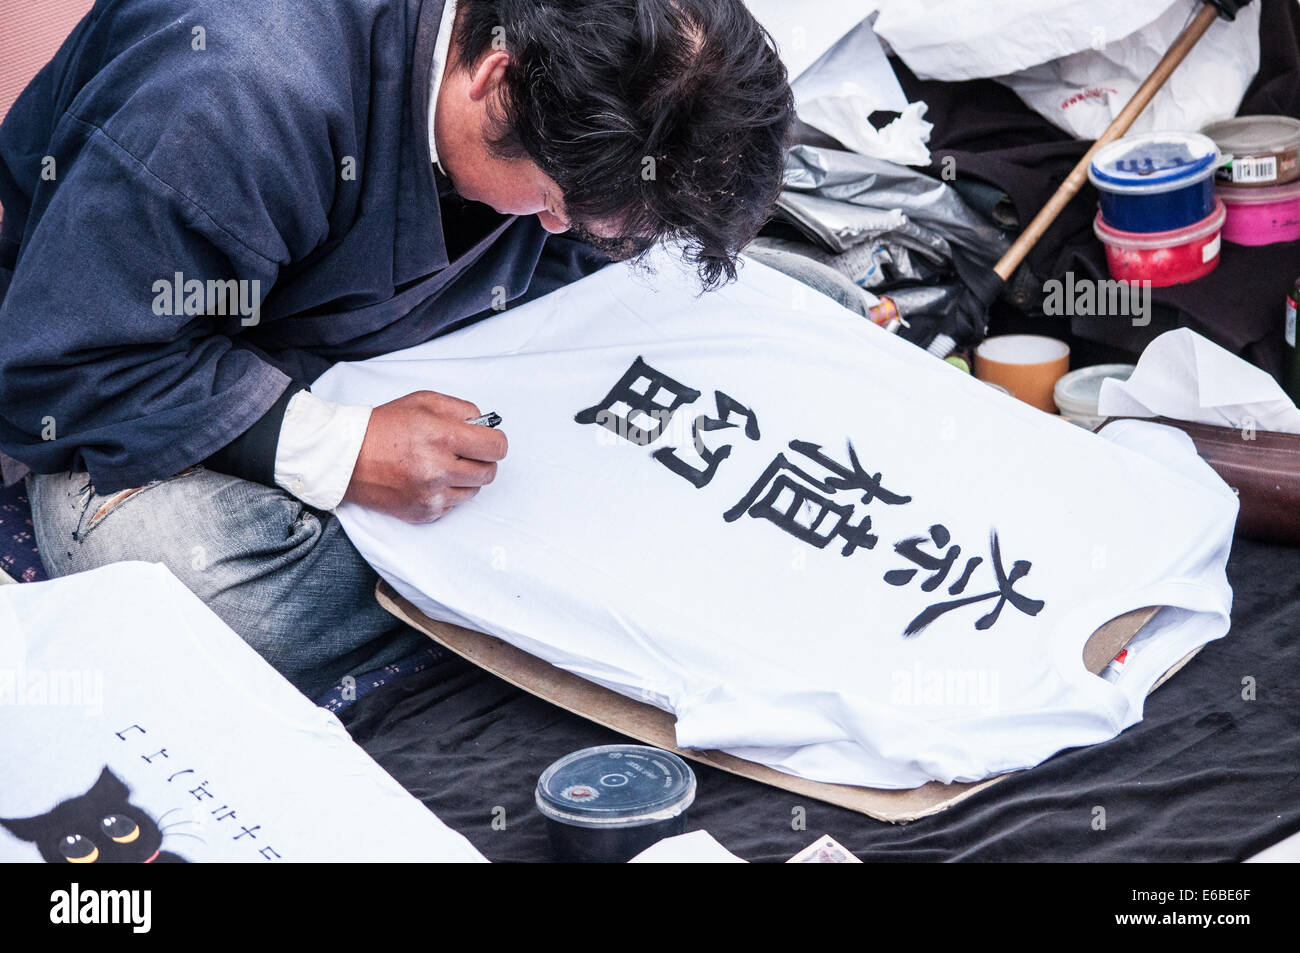 Japanisch schreiben auf Hemd Stockfoto